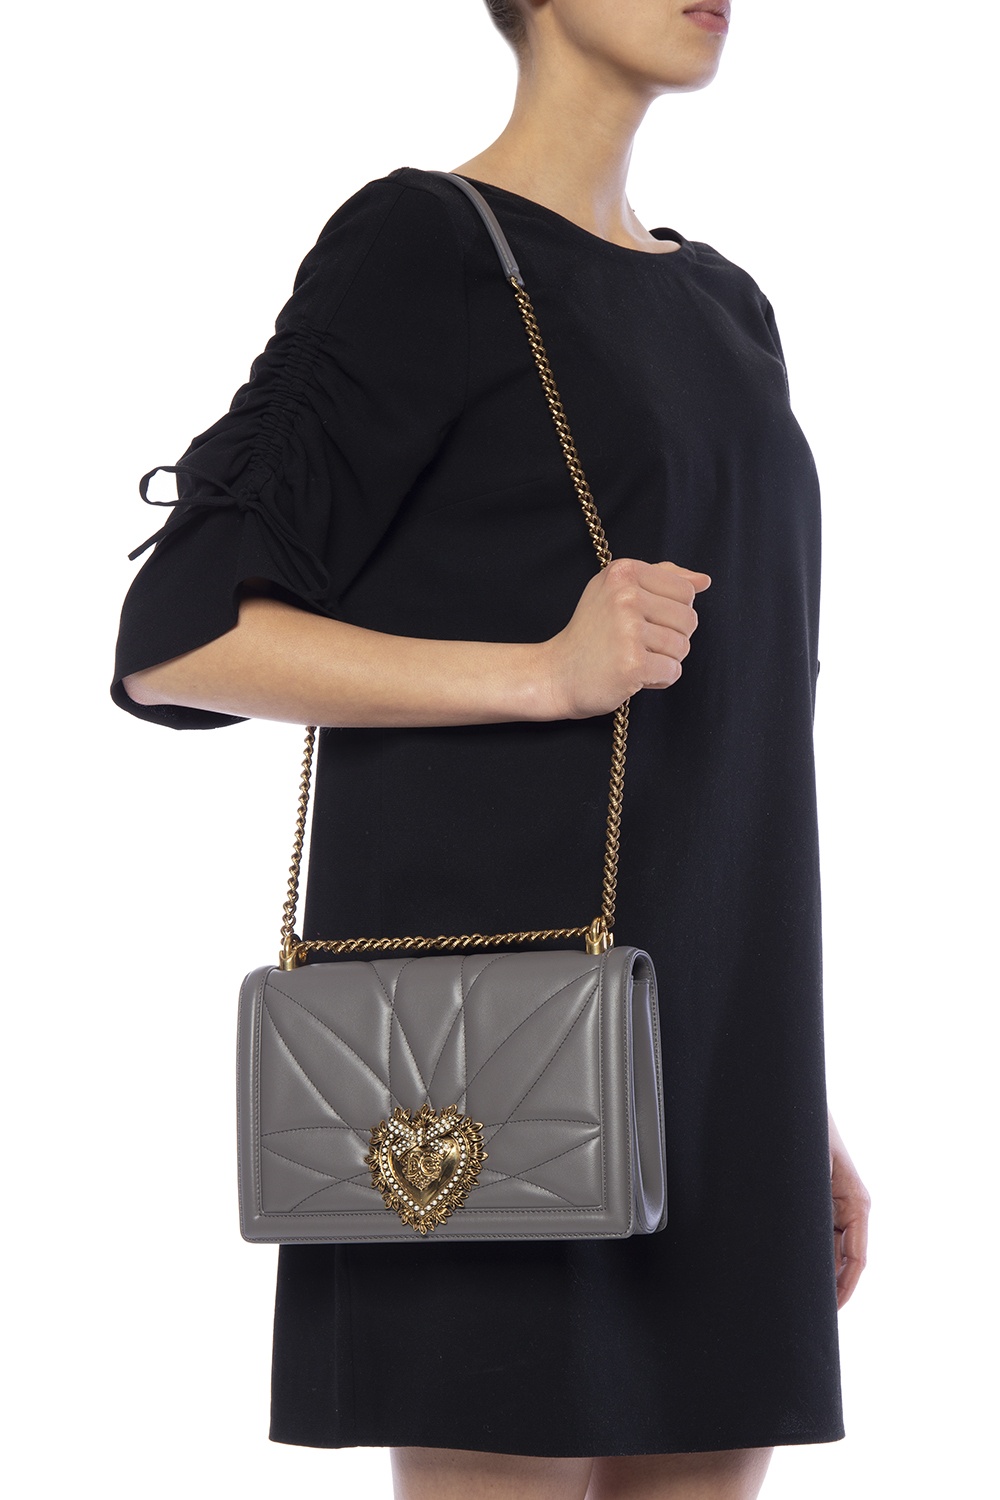 Dolce & Gabbana 'Devotion' shoulder bag | dolce gabbana sleeveless floral  brocade dress item | IetpShops | Women's Bags